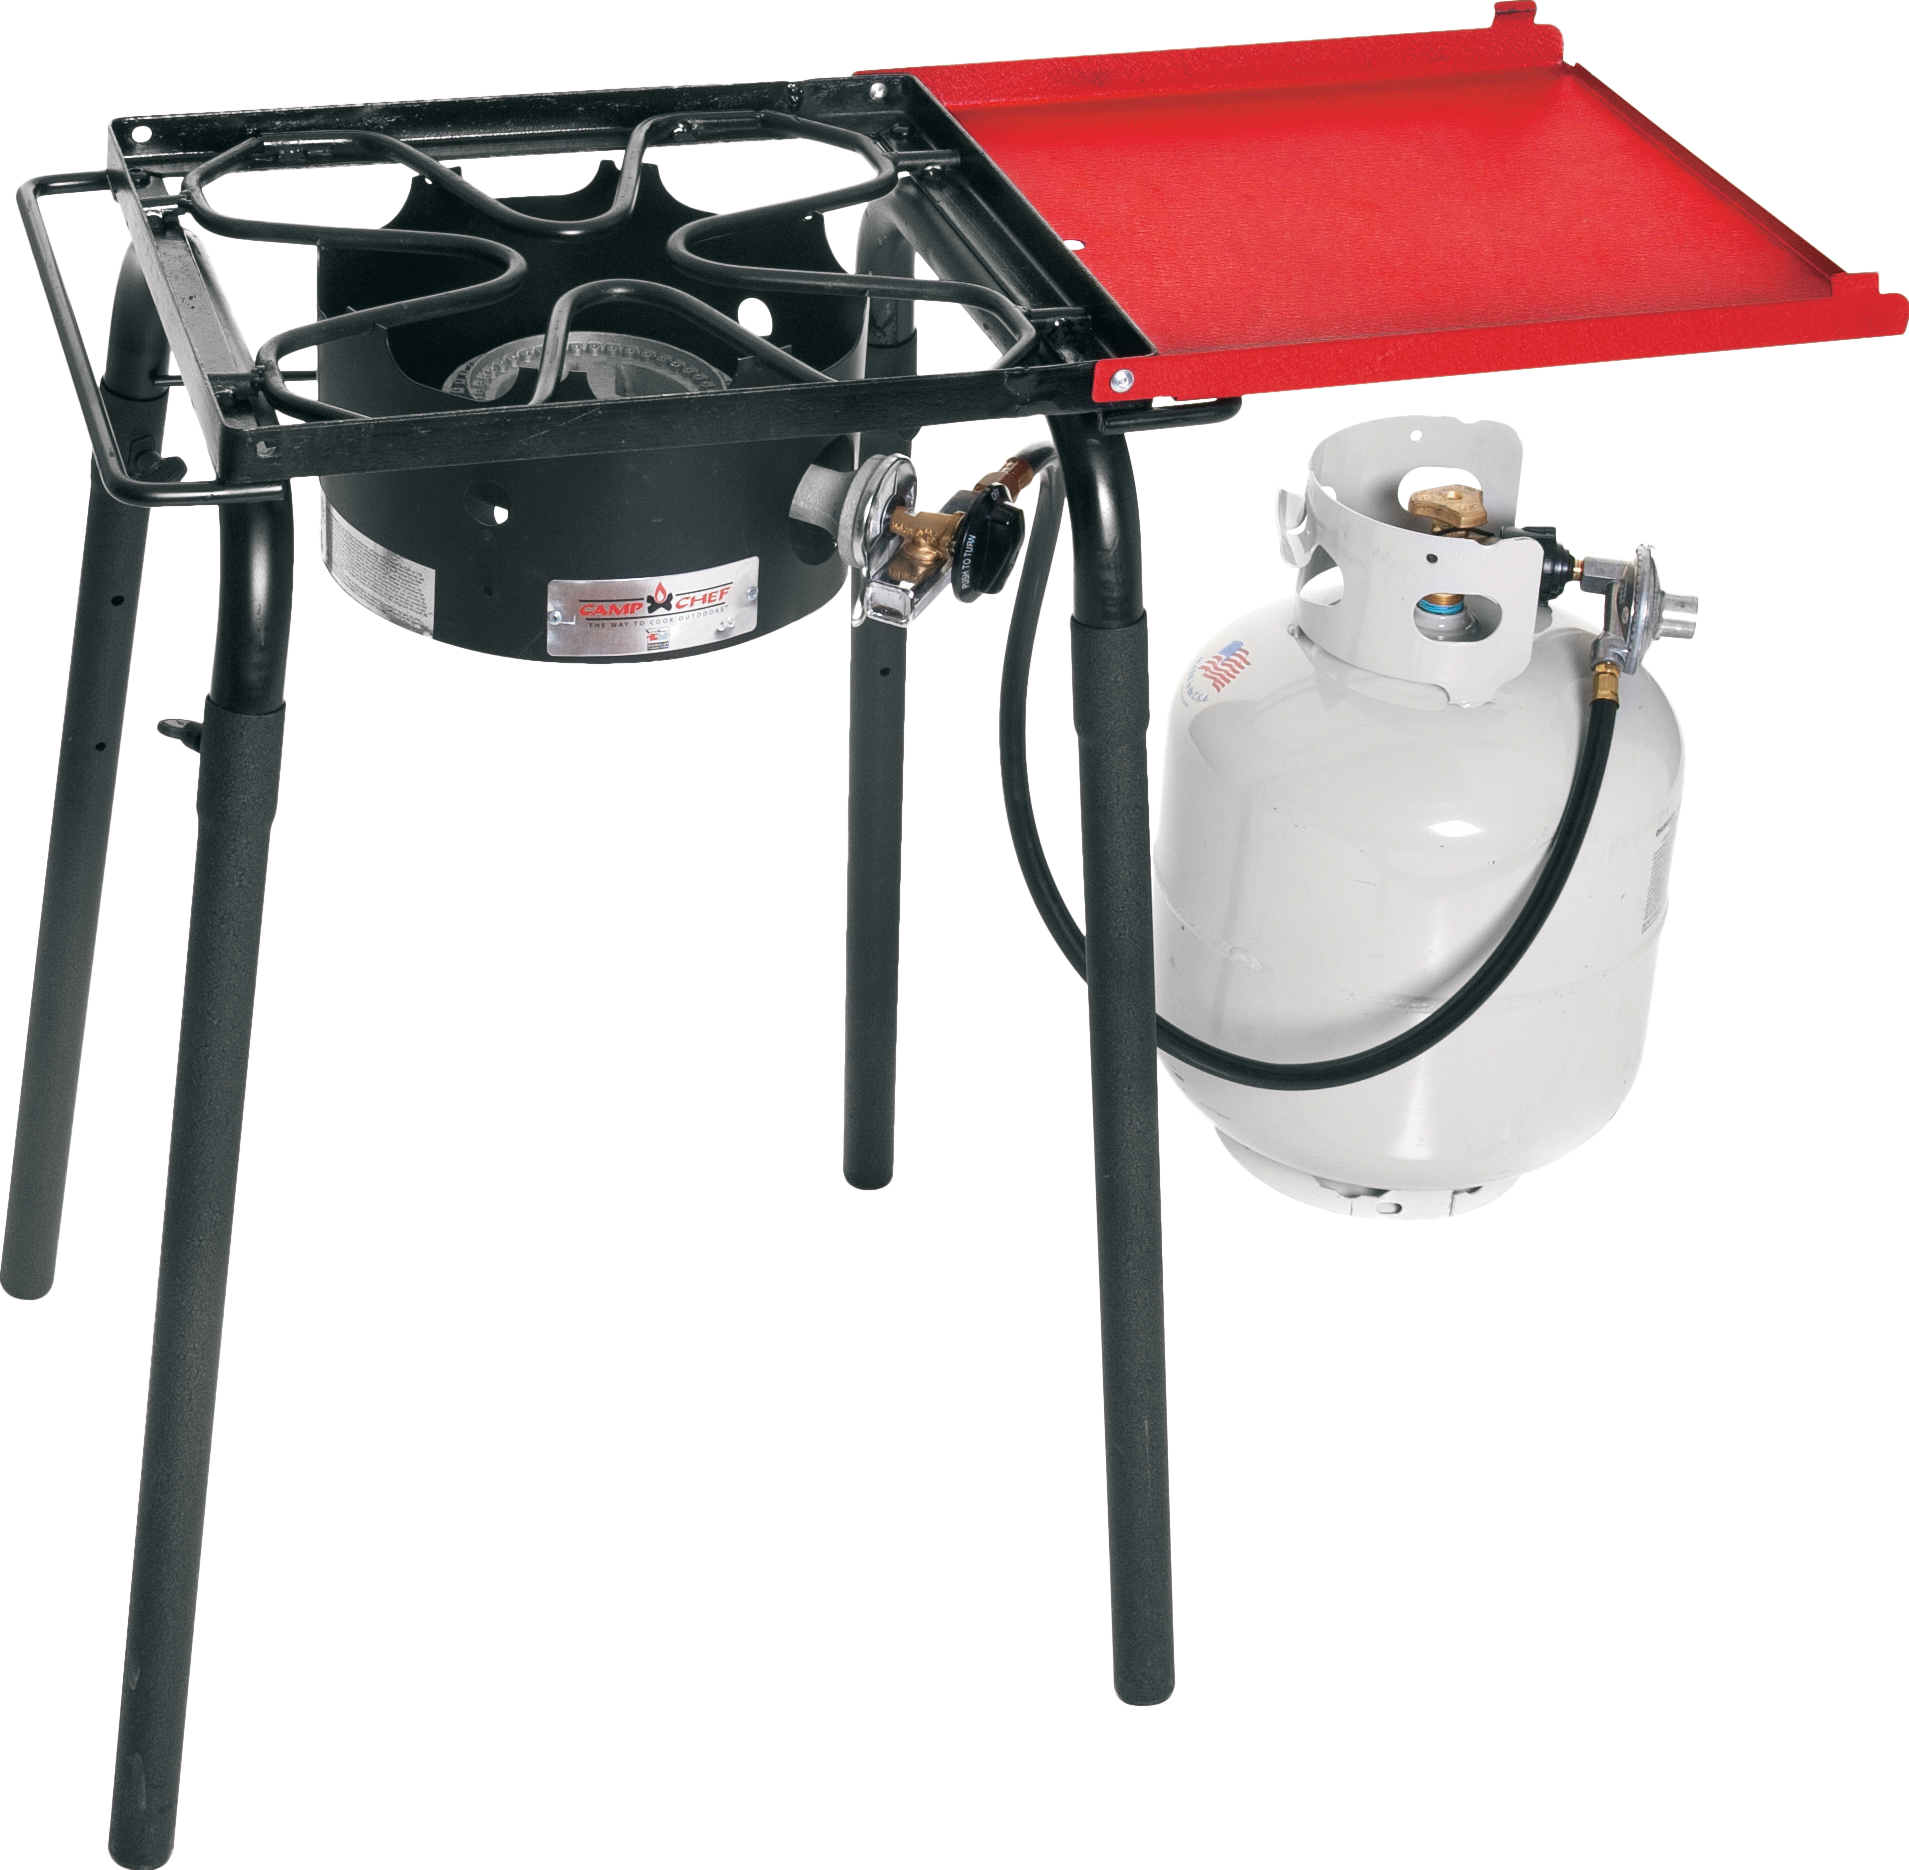 Camp Chef One-Burner Multi-Fuel Stove  Multi fuel stove, Camping stove, Electric  camping stove